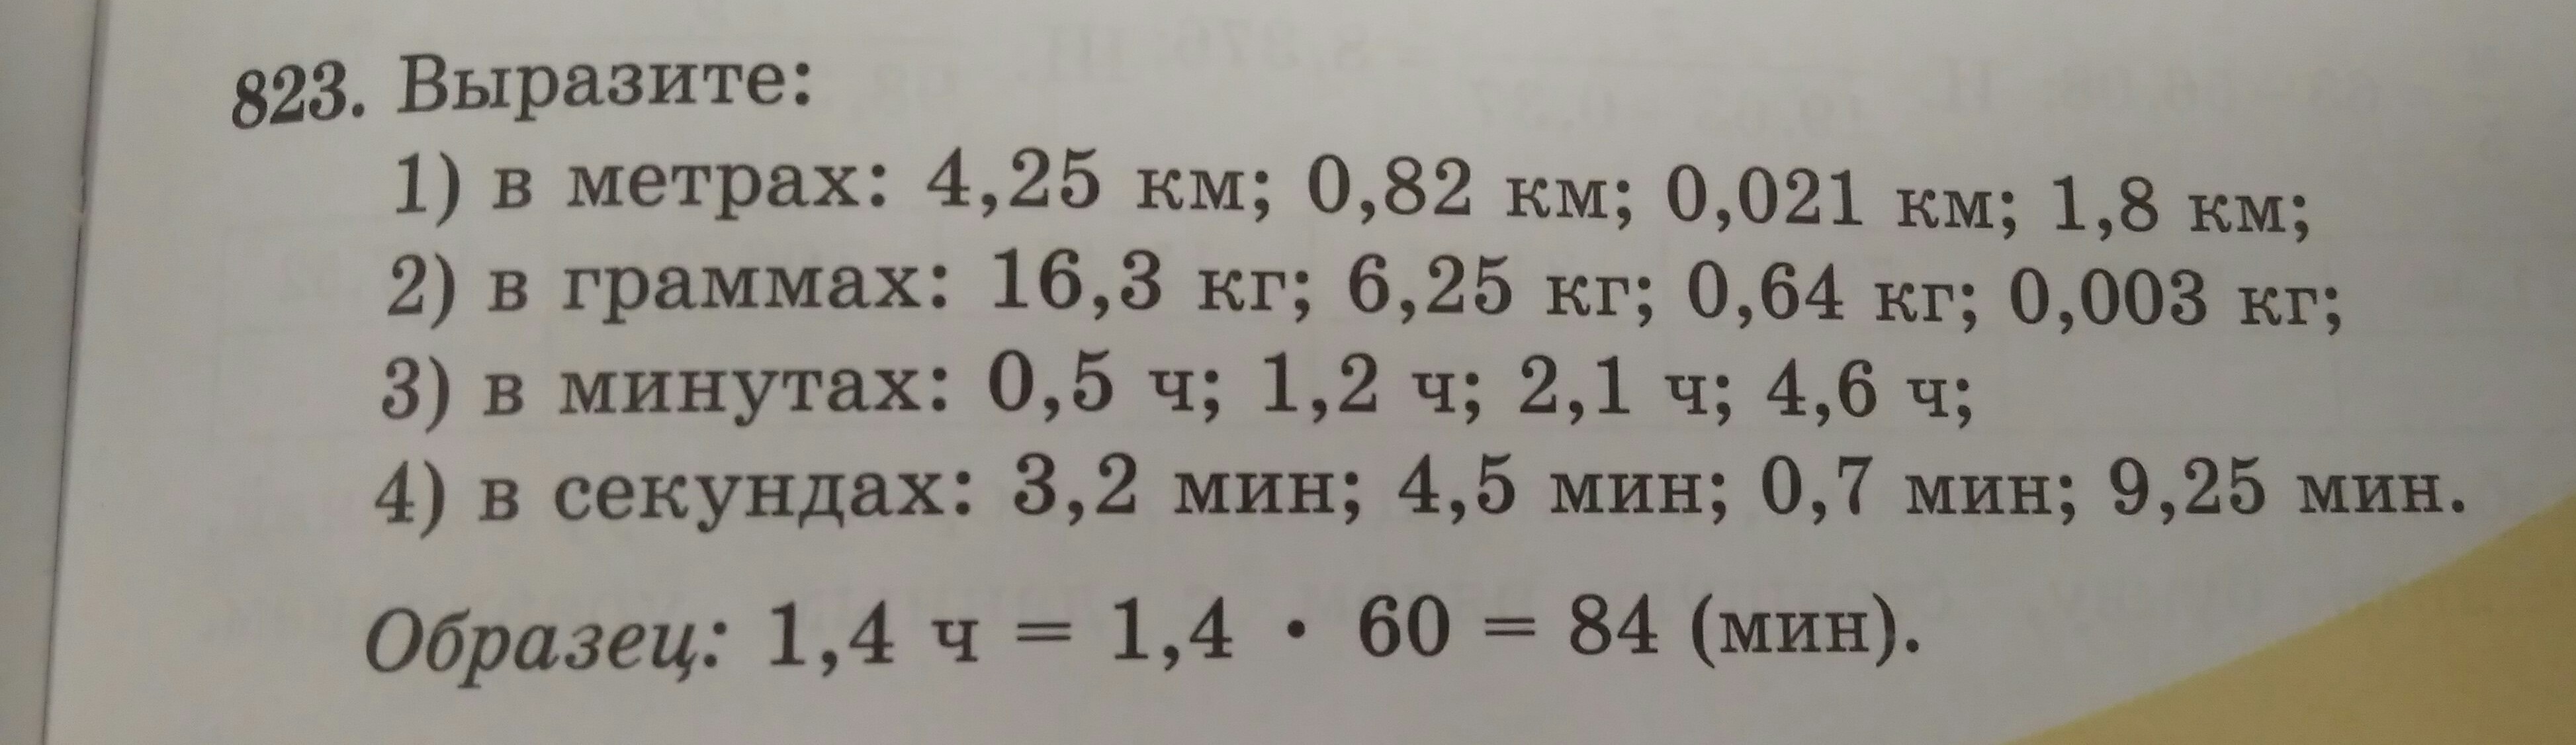 Вырази в метрах 3 км. Вырази в метрах 0.003. Выразите в метрах 0,03 км. Выразите в метрах 0.002 км. Выразите в метрах 0.003 км.